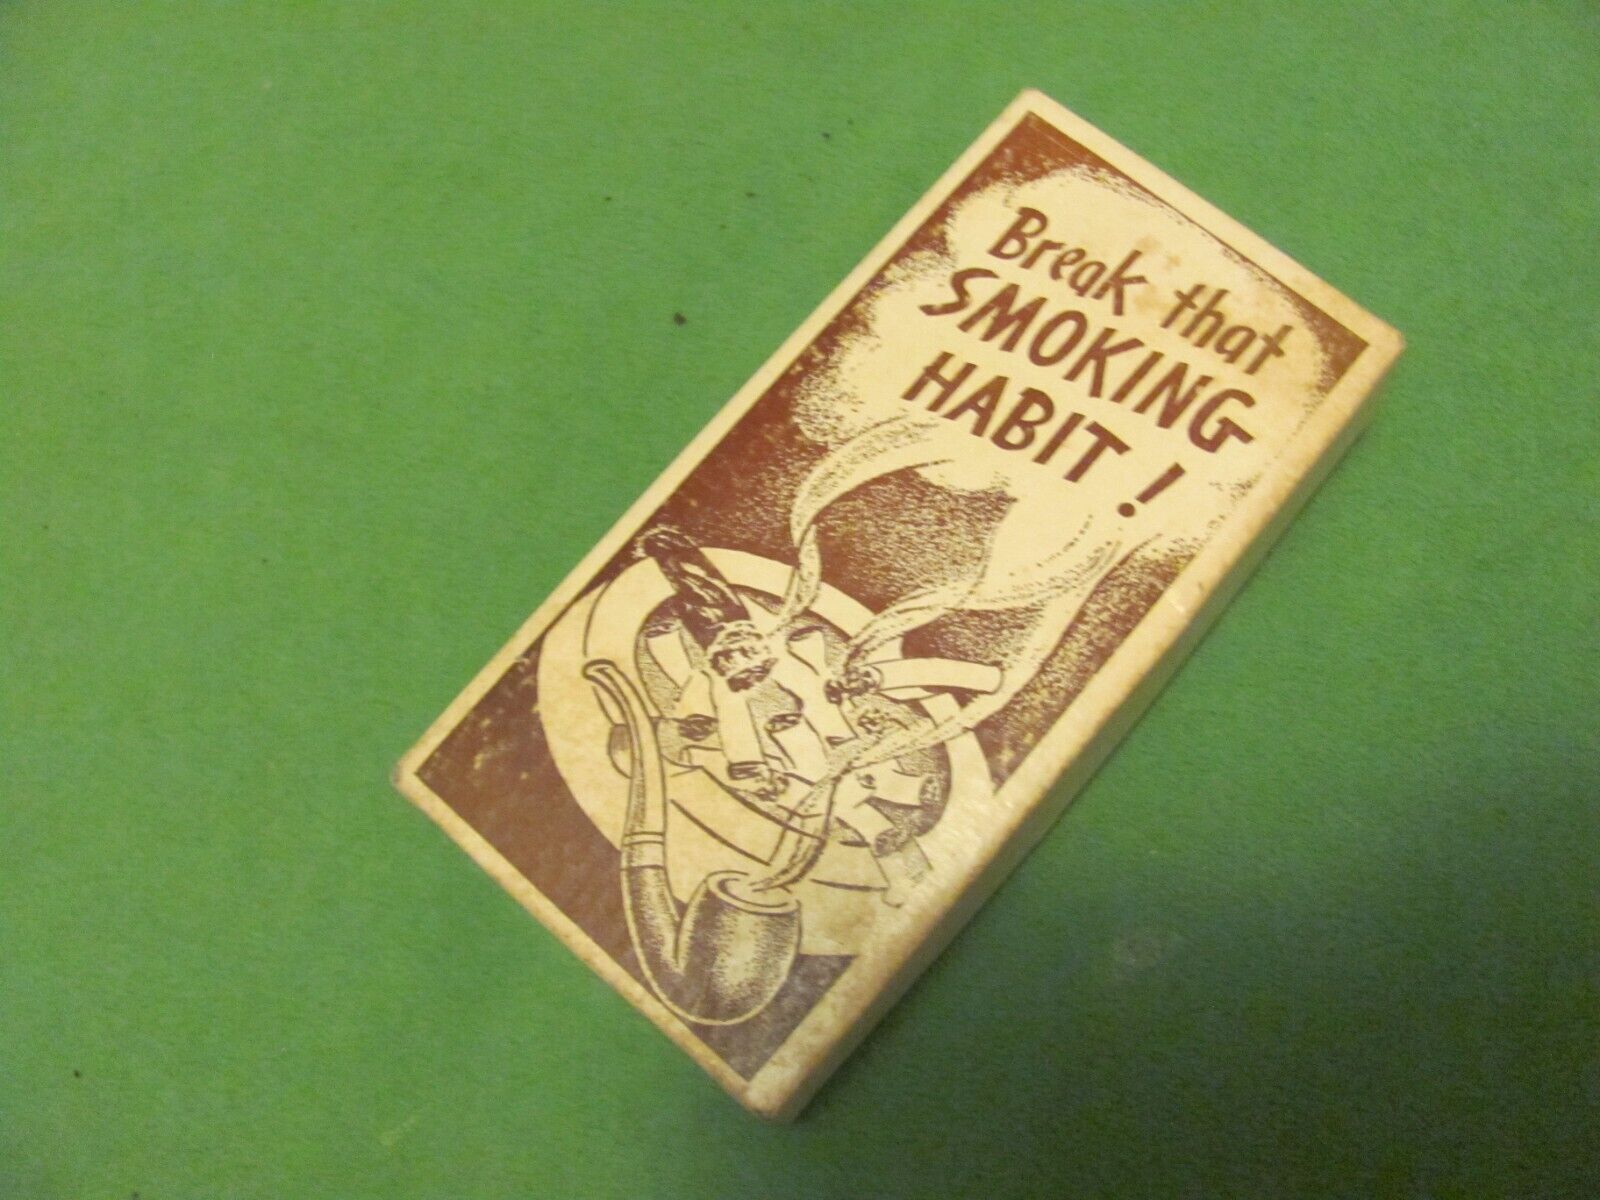 1) Vintage Break That Smoking Habit Toy.